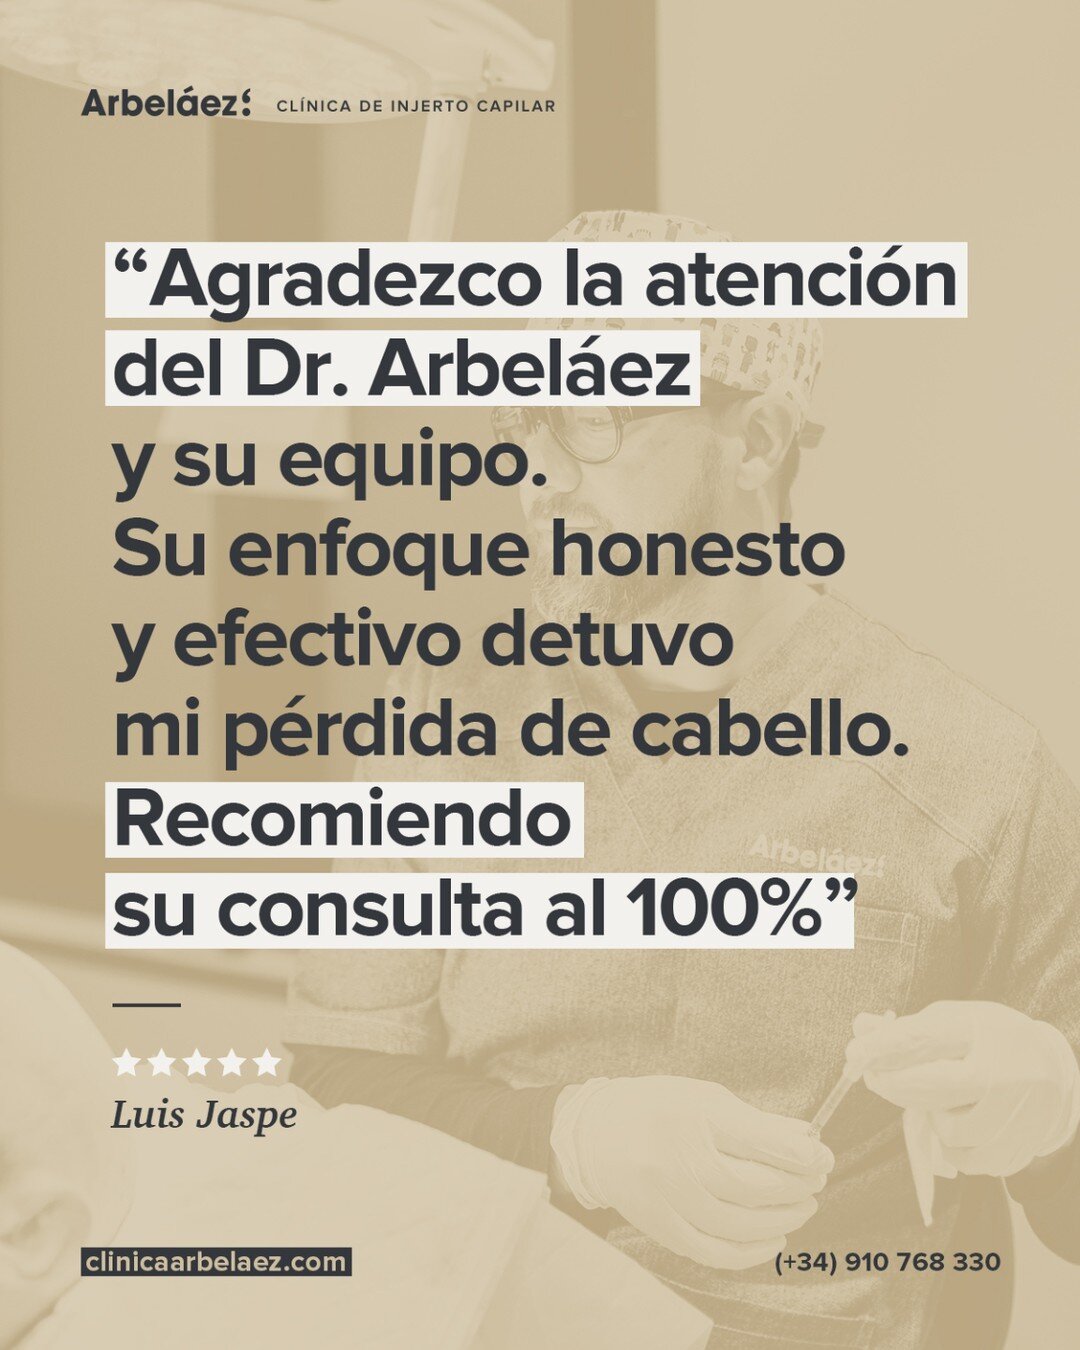 ⭐⭐⭐⭐⭐ - Luis Jaspe
&ldquo;Agradezco la atenci&oacute;n del Dr. Arbel&aacute;ez y su equipo. Su enfoque honesto y efectivo detuvo mi p&eacute;rdida de cabello. Recomiendo su consulta al 100%&rdquo;

👉 &iquest;Te preocupa tu cabello? Vive la recuperac